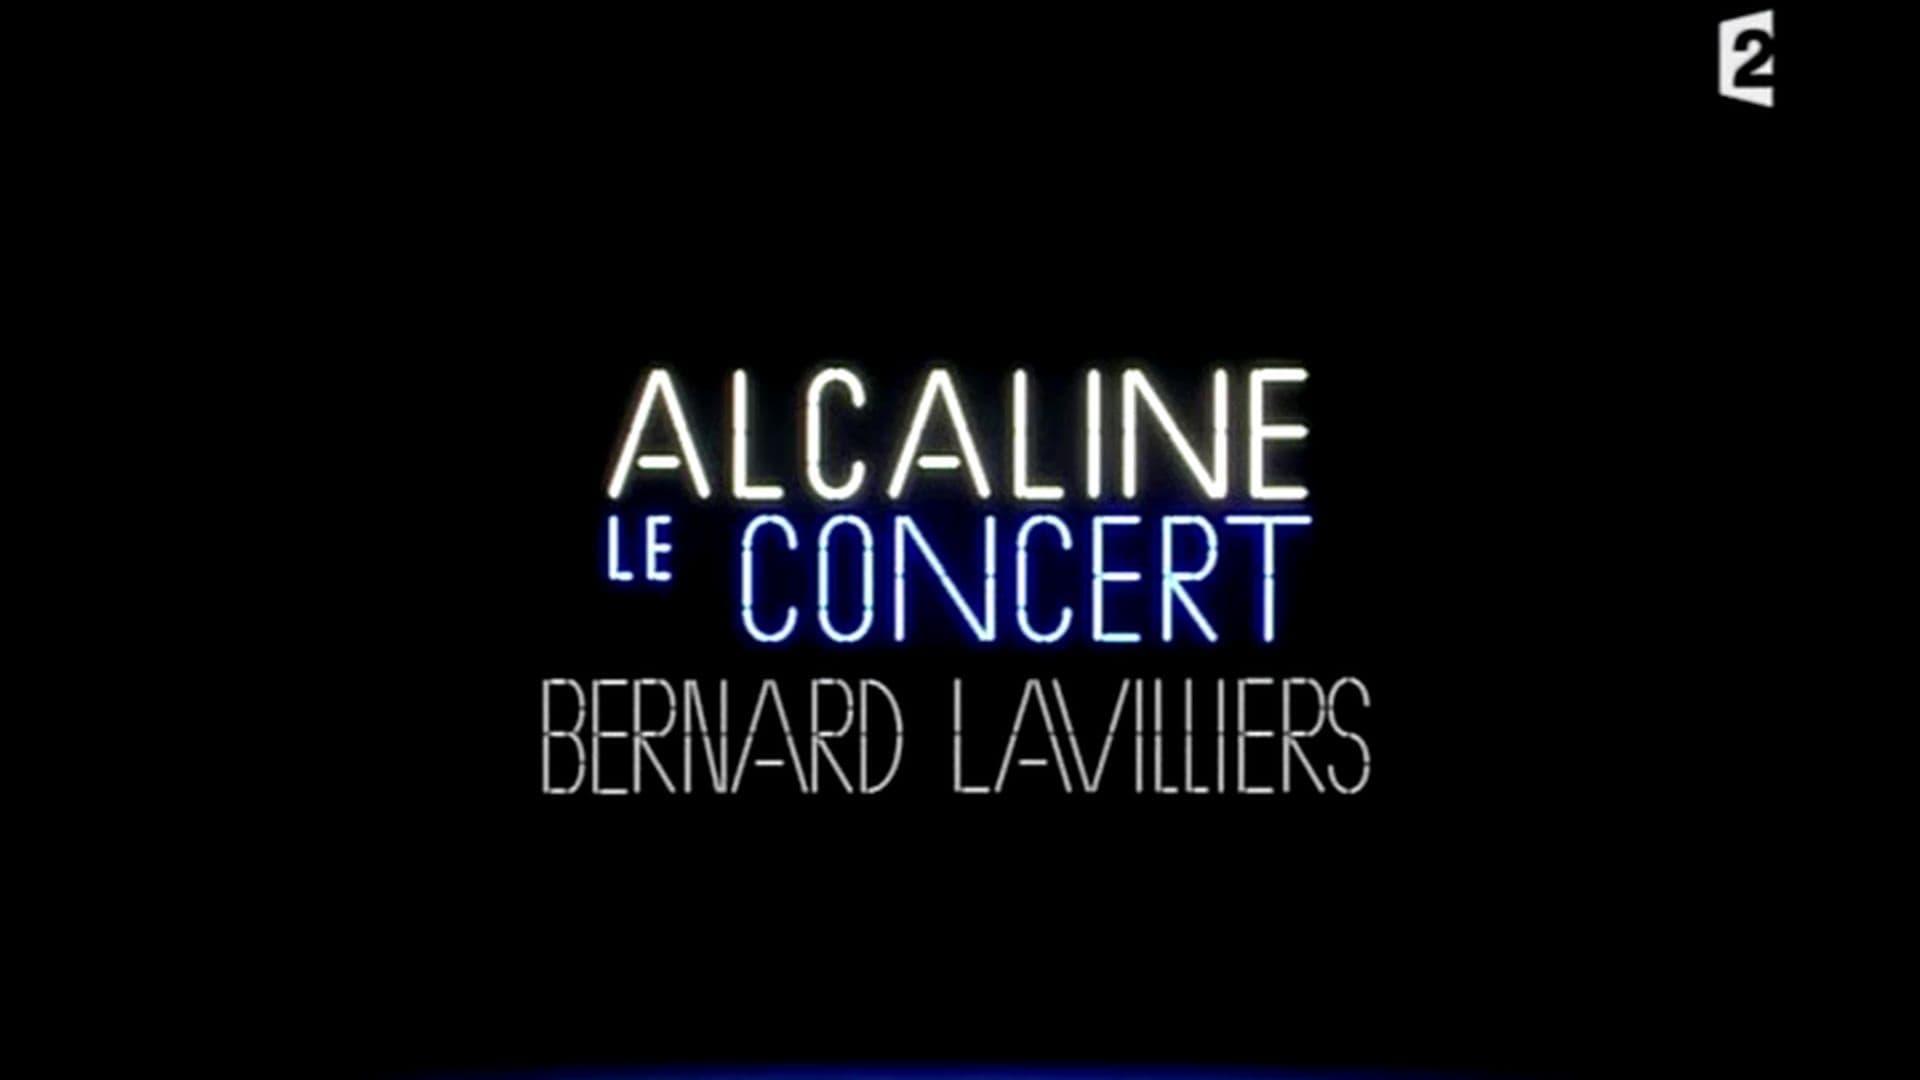 Bernard Lavilliers - Alcaline le Concert backdrop